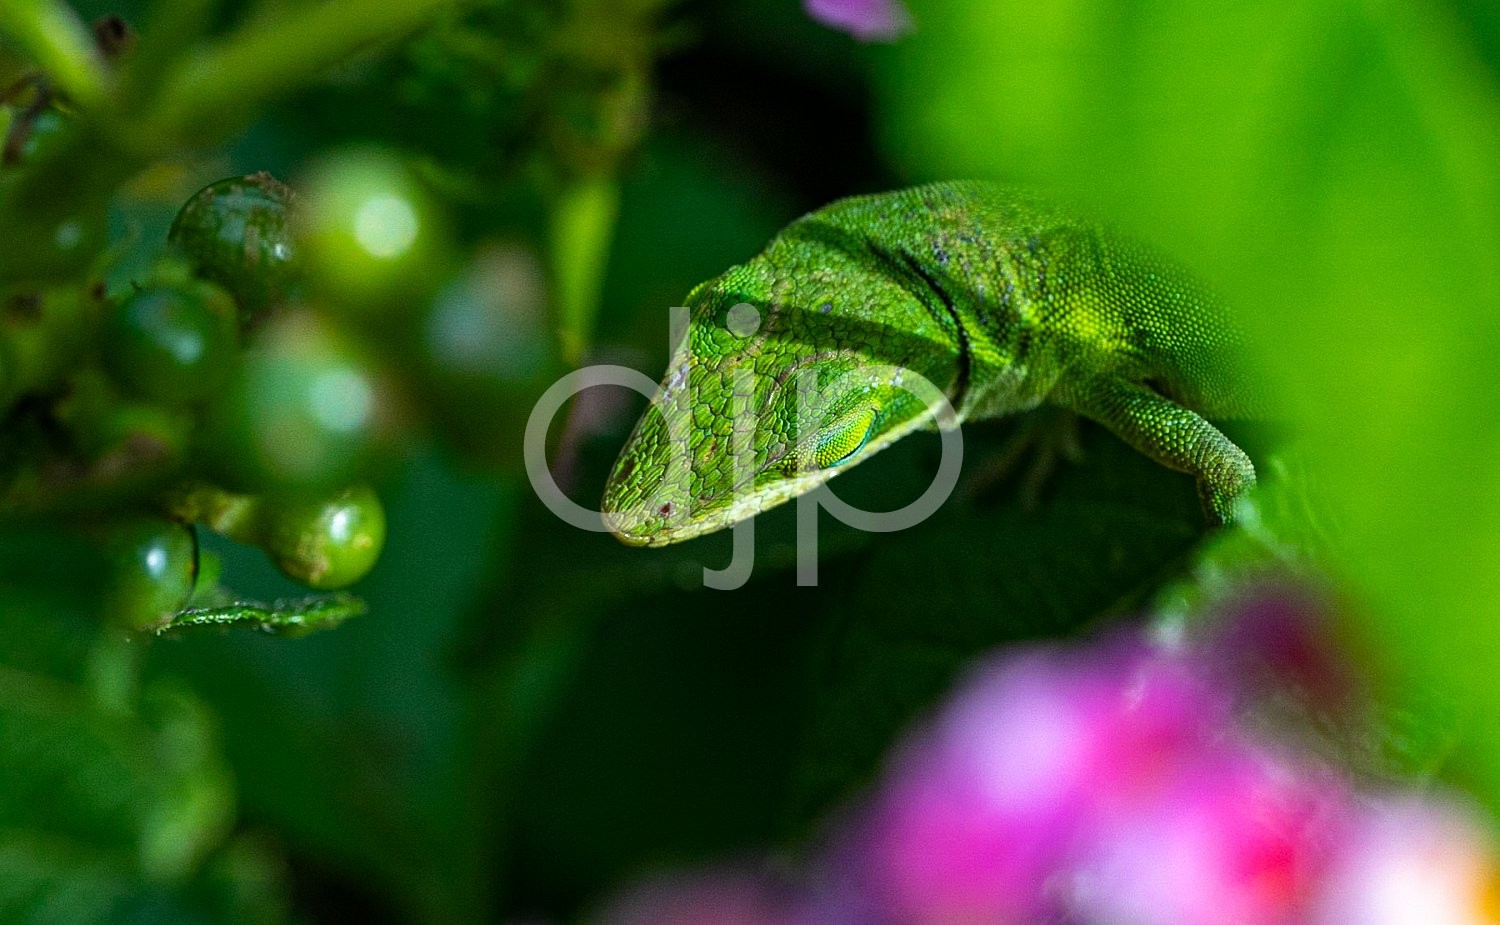 D Jones Photography, djonesphoto, flowers, ladybug, lizard, macro, personal